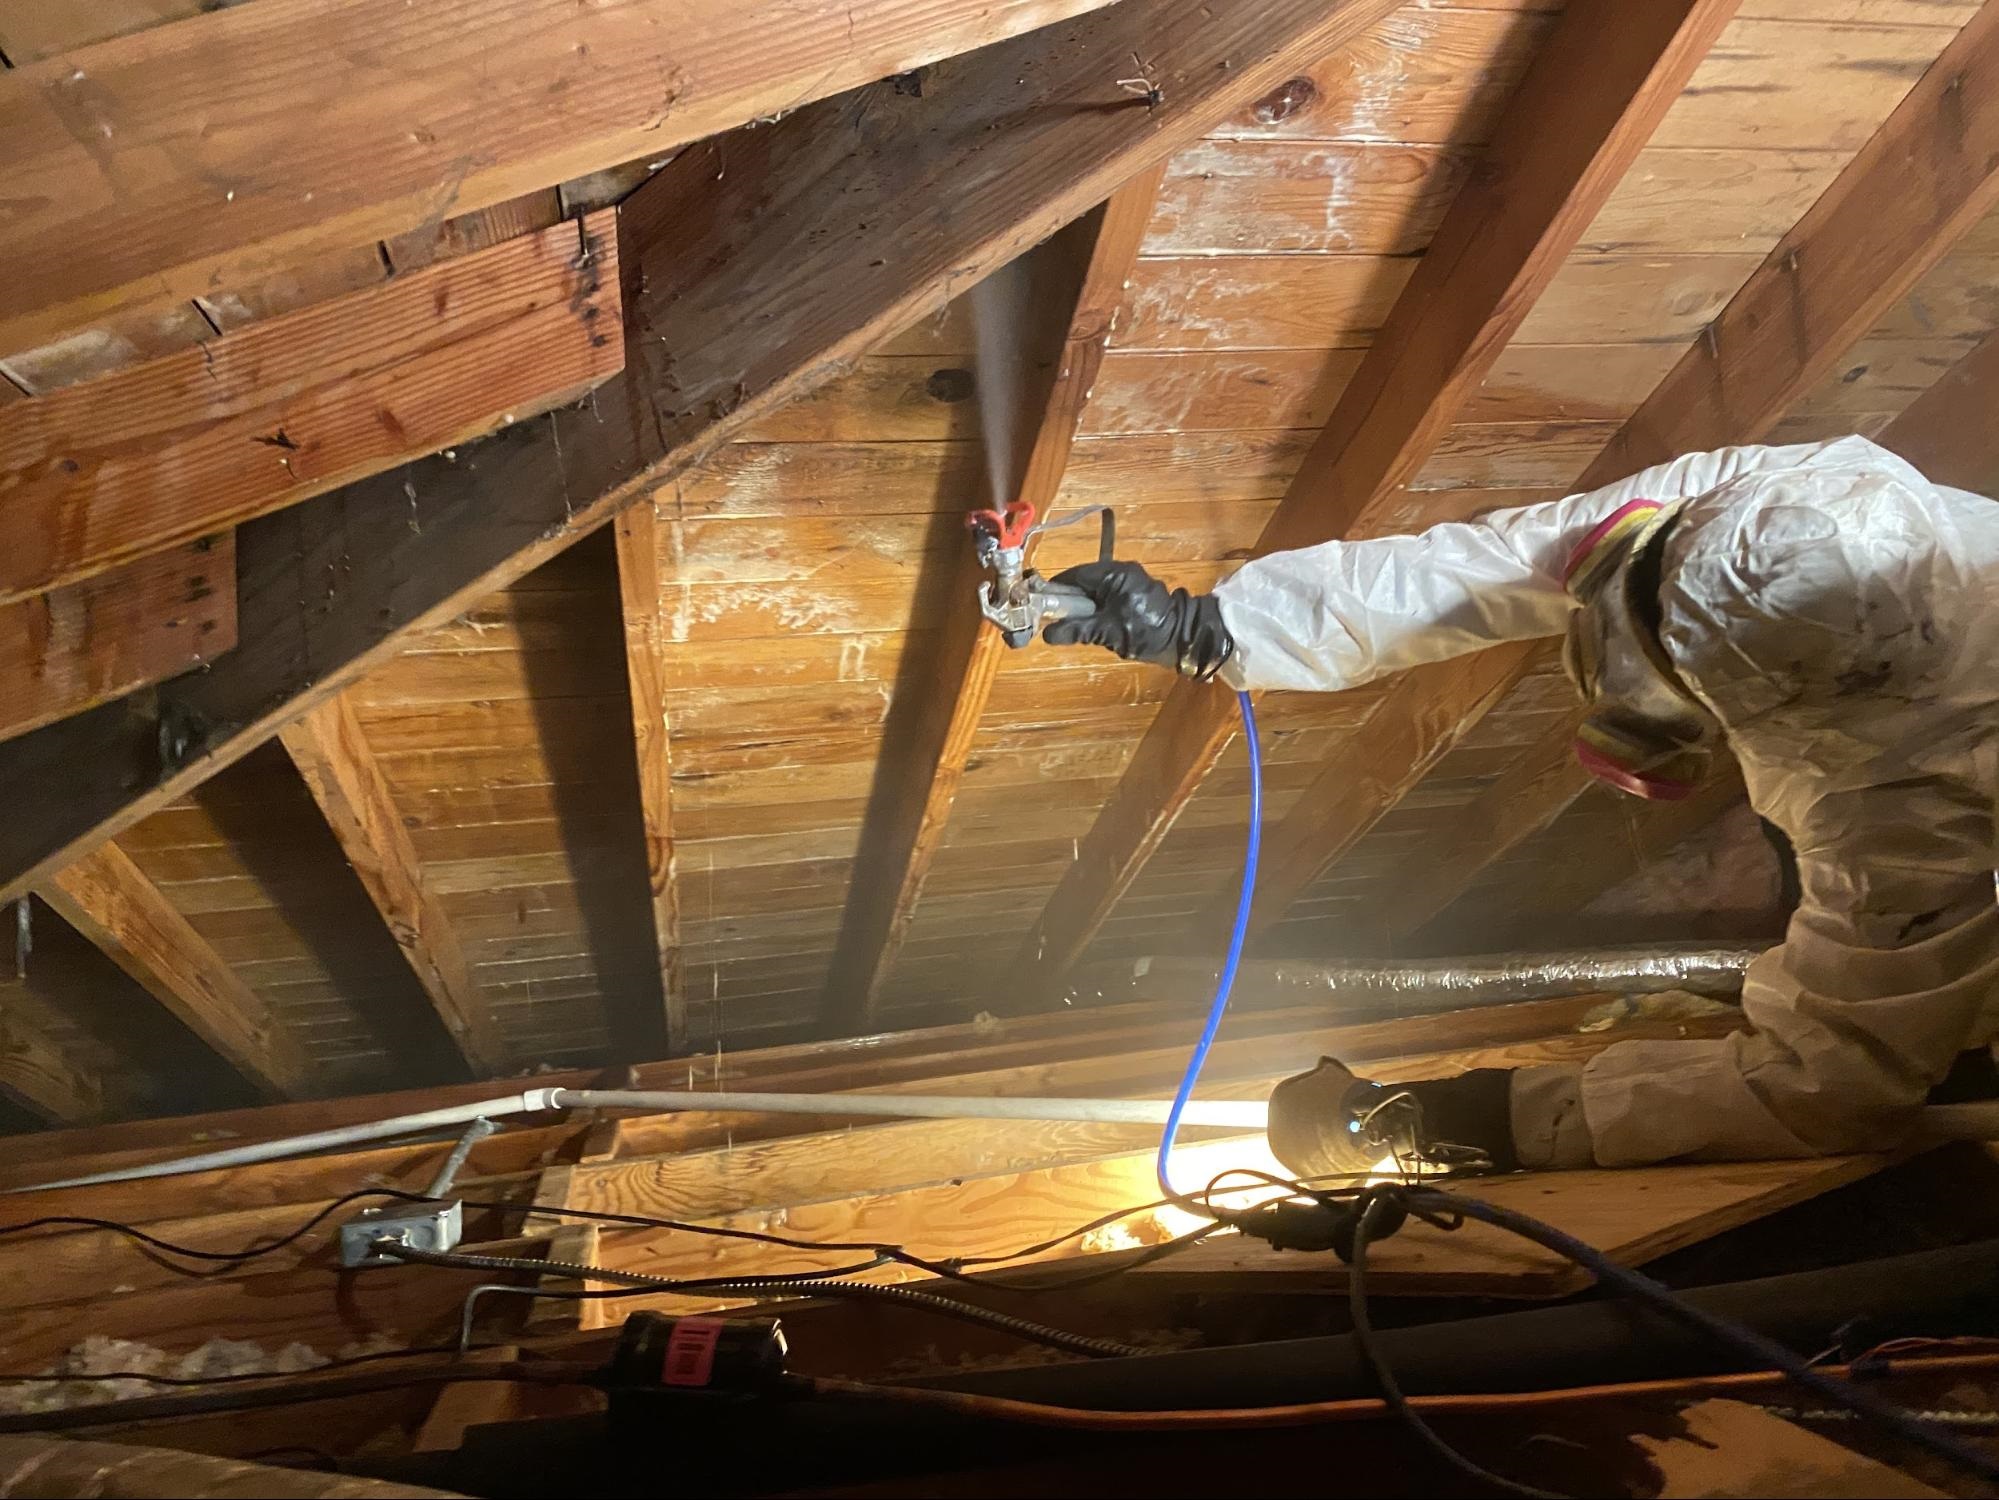 attic mold removal